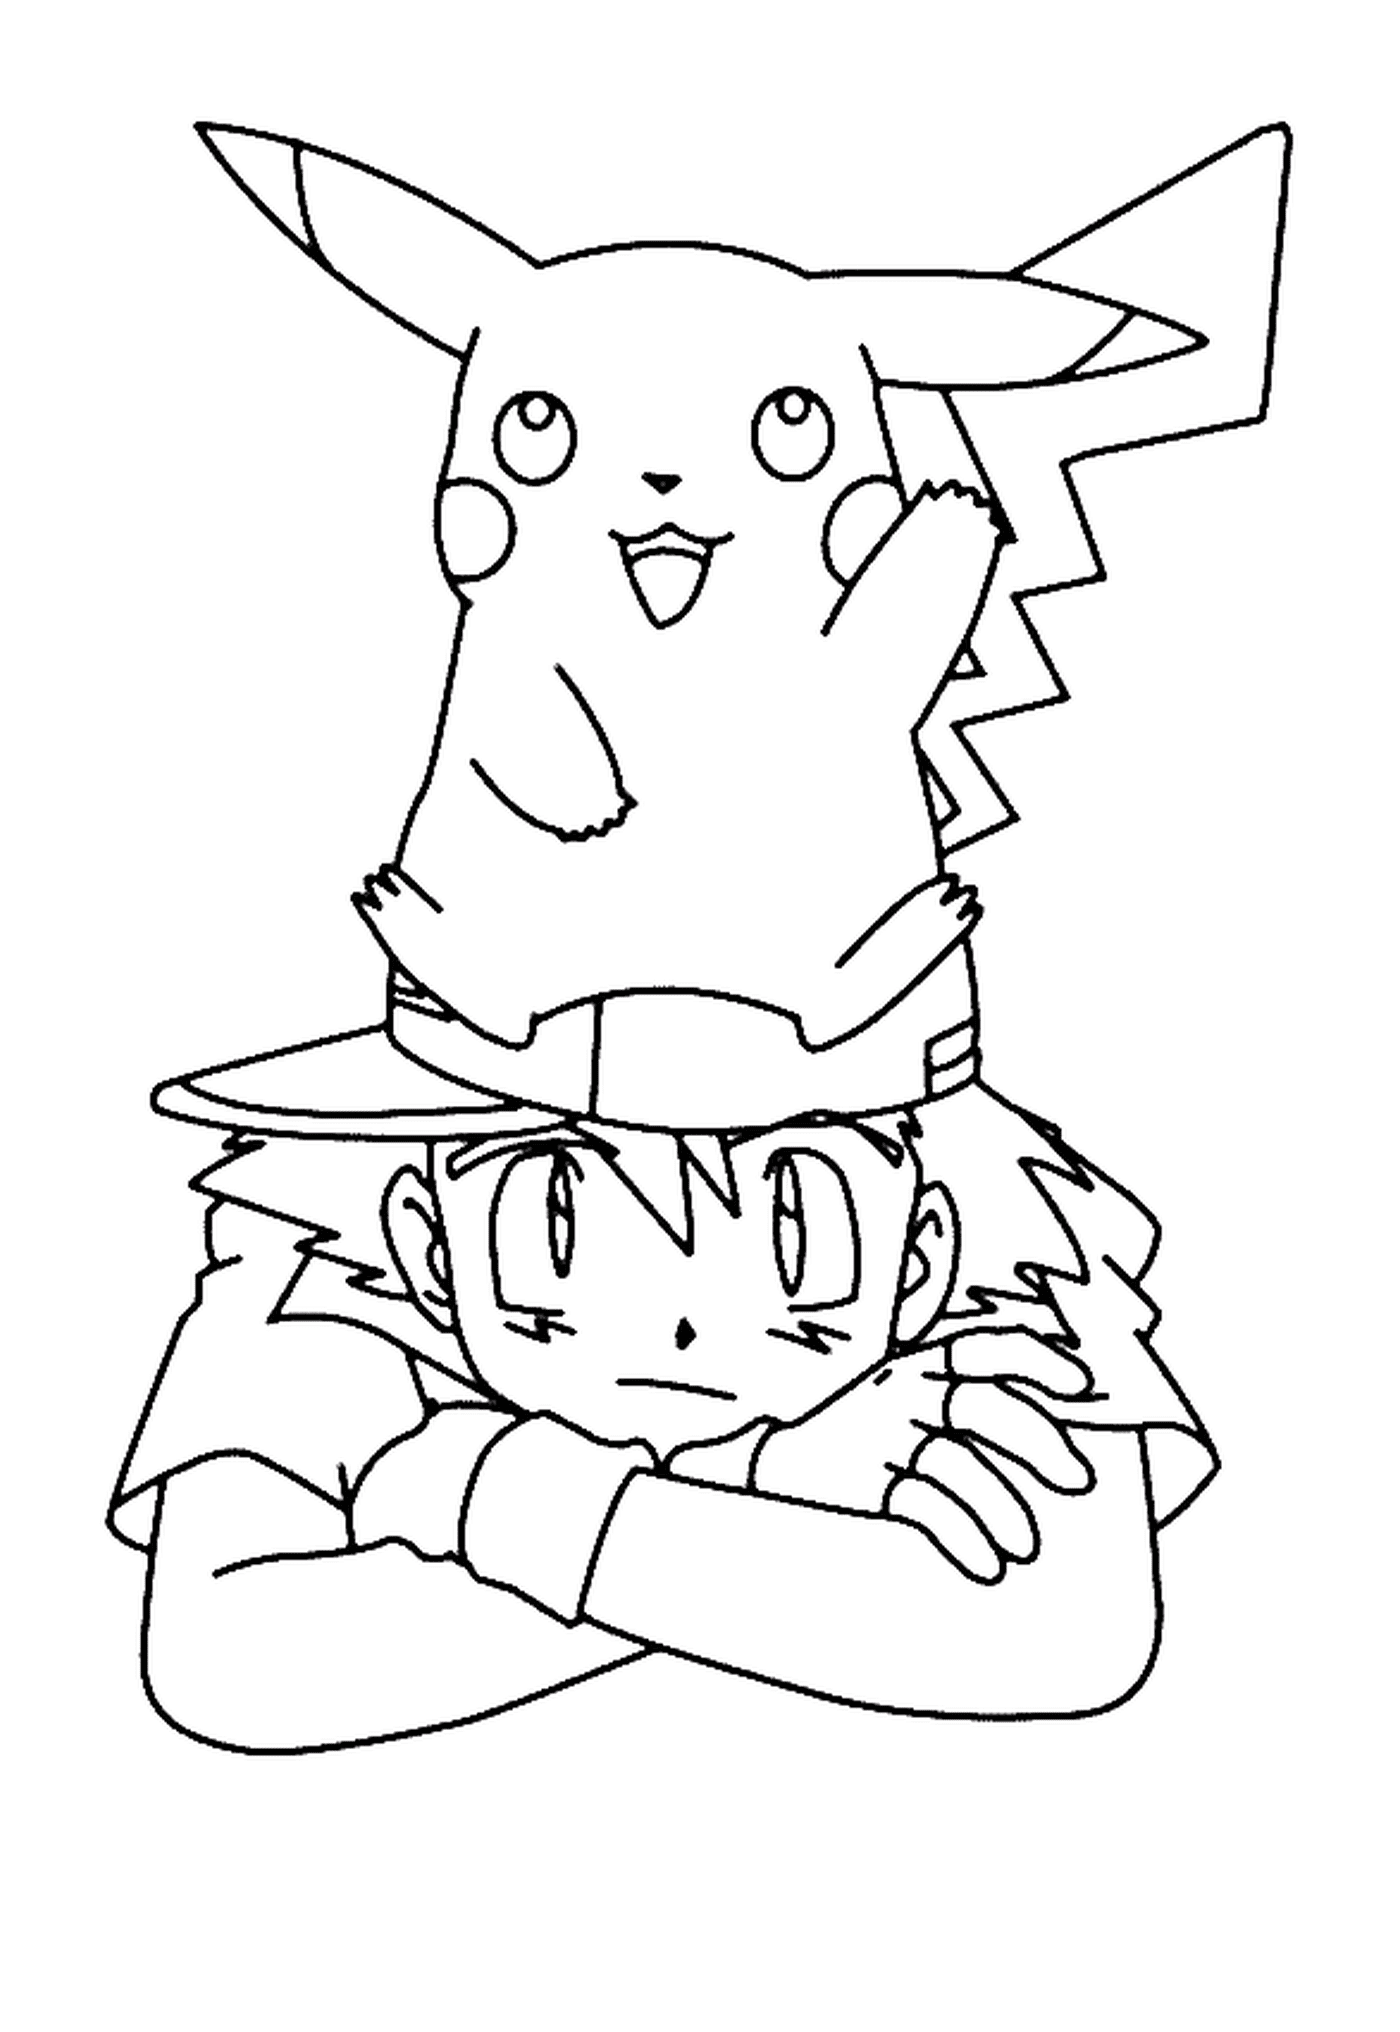  Ein Junge und Pikachu zusammen 